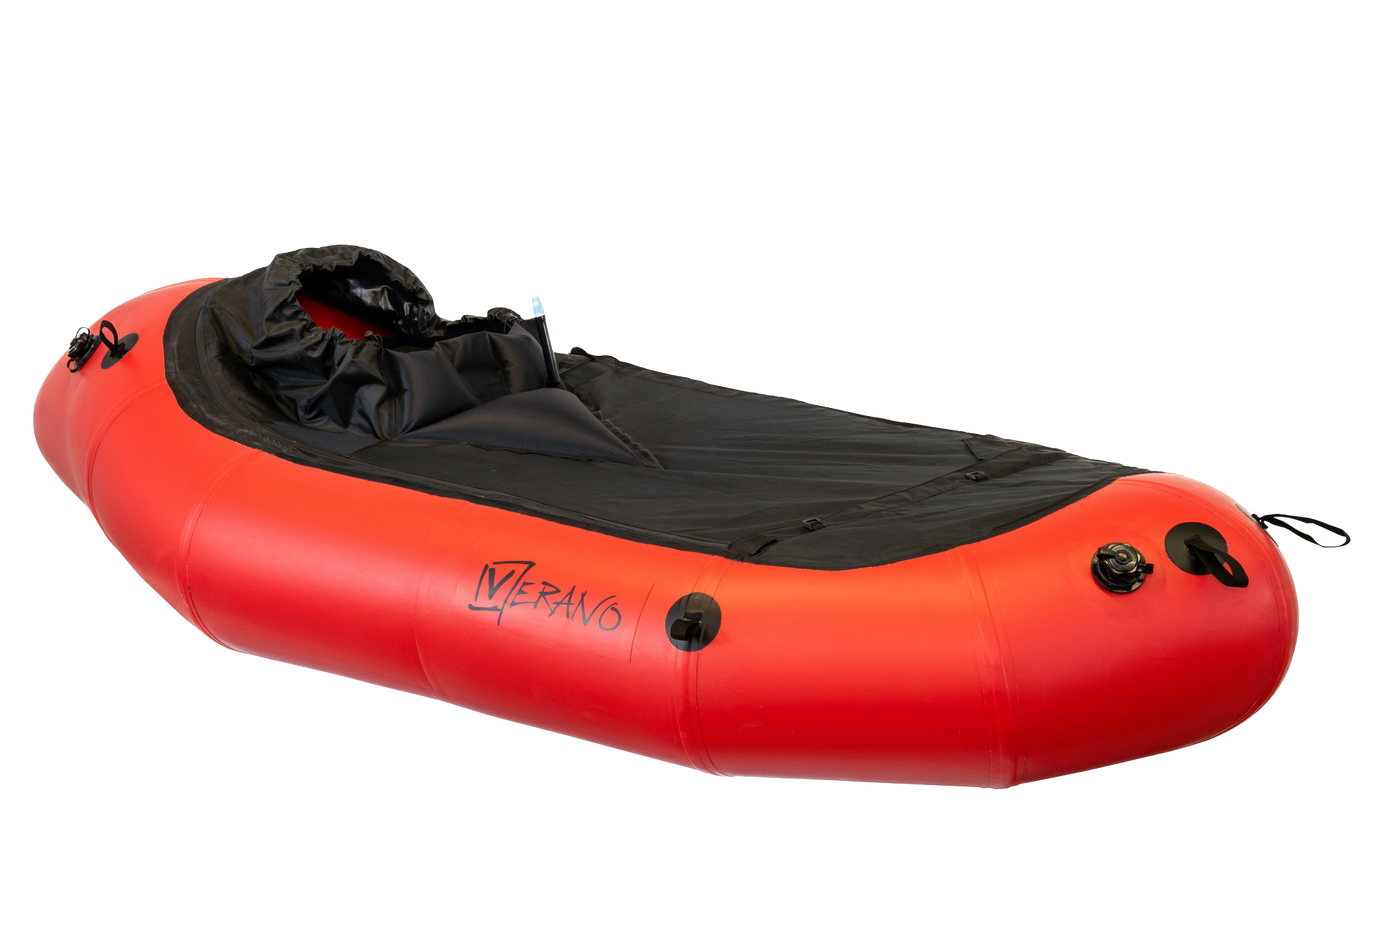 Verano - Inflatable Packraft